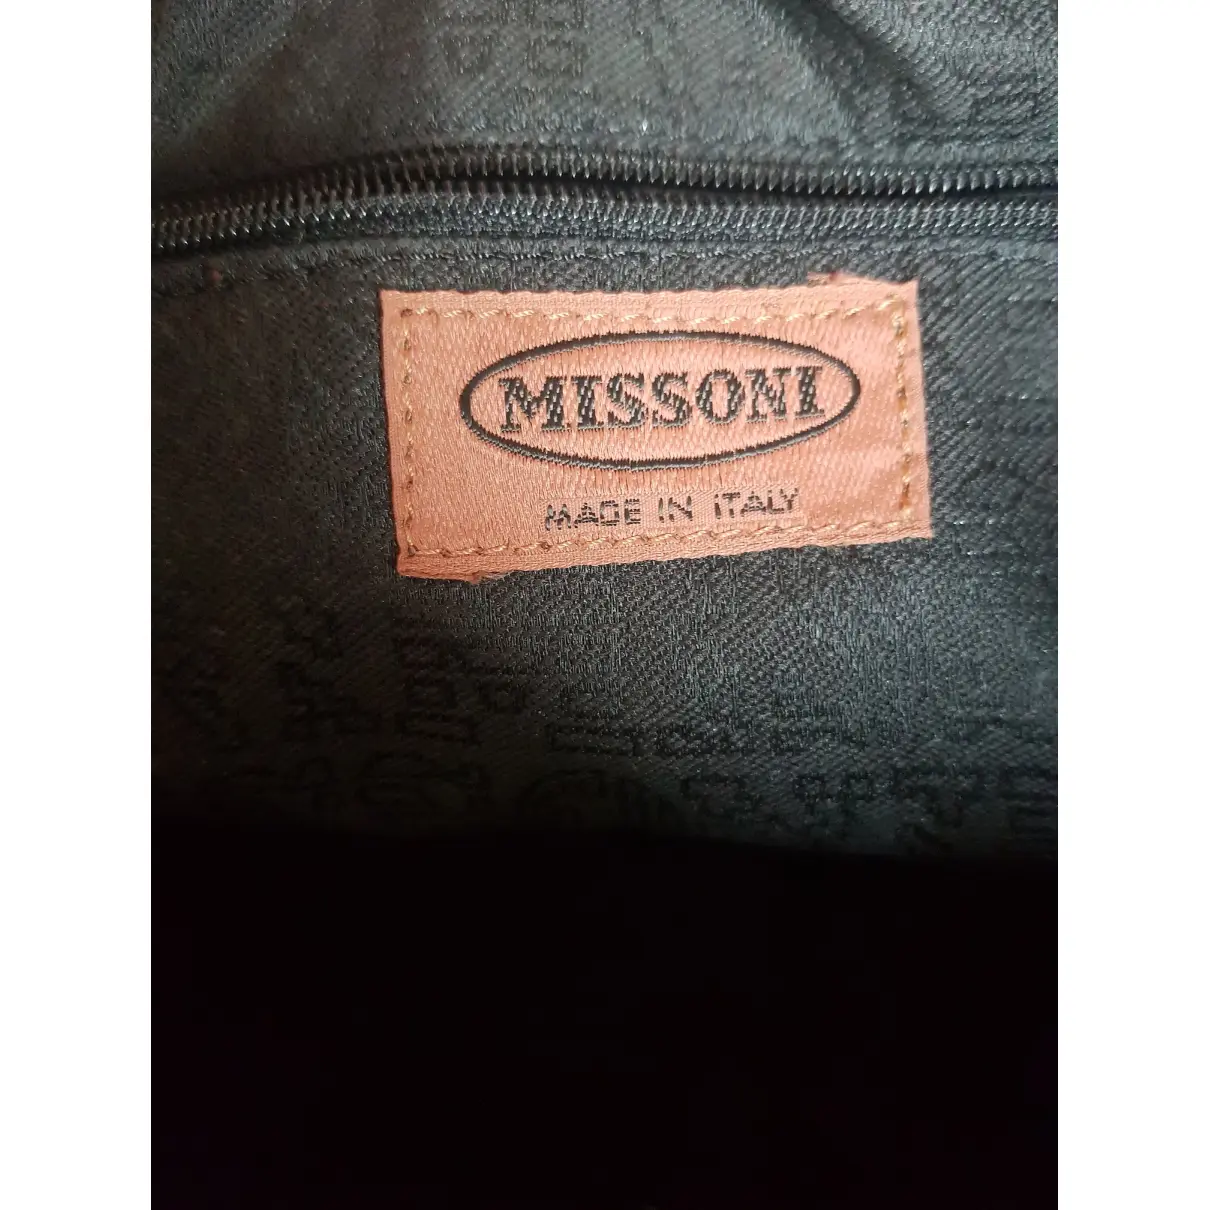 Luxury Missoni Handbags Women - Vintage